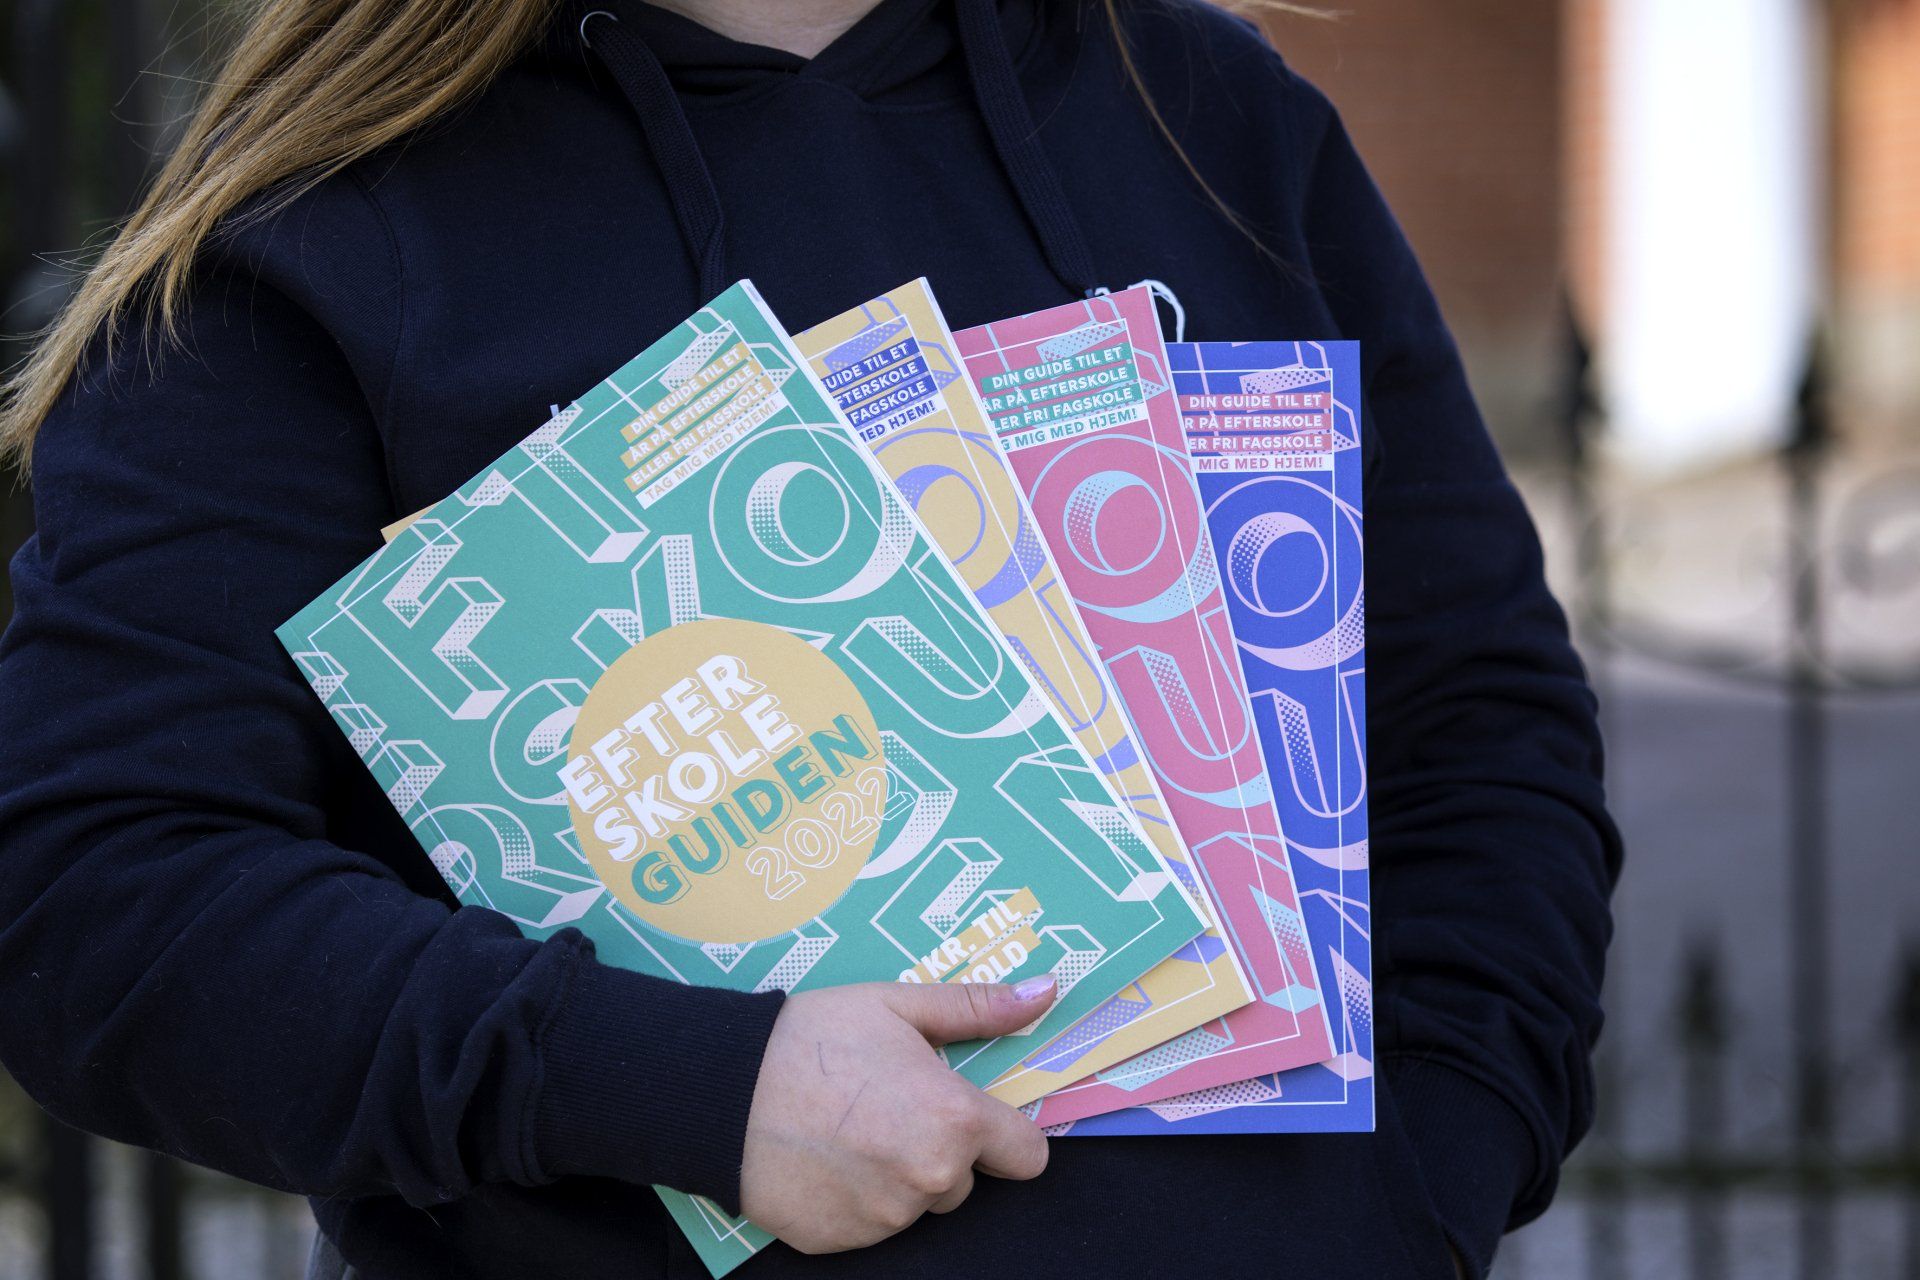 Billedet viser en kvinde, der holder fire udgaver af Efterskoleguiden i højre hånd. Hun holder magasinerne ind mod kroppen. Der er en grøn, gul, rød og blå udgave af magasinet.